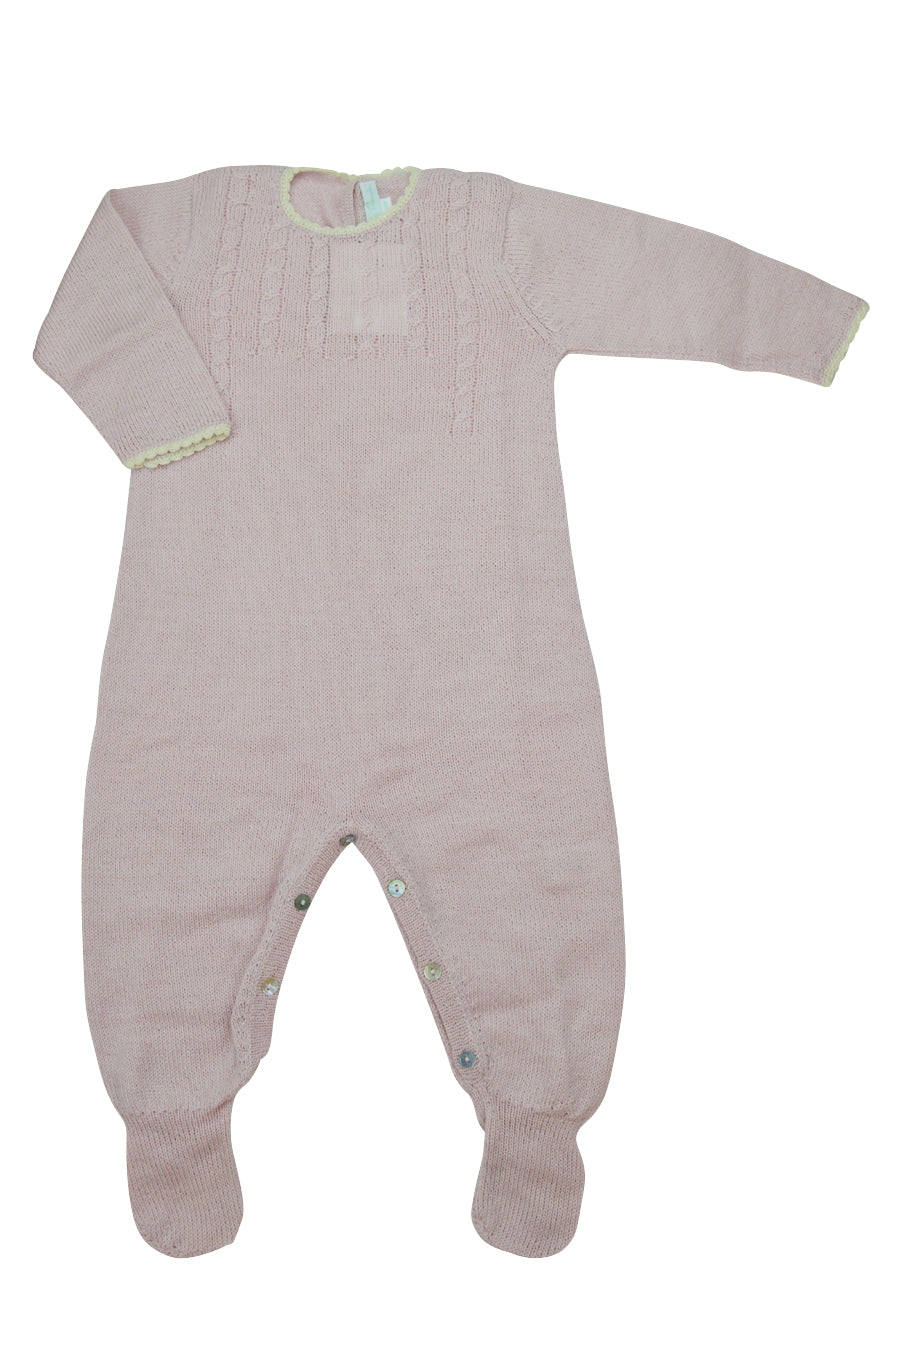 Pink Alpaca Footie - Little Threads Inc. Children's Clothing